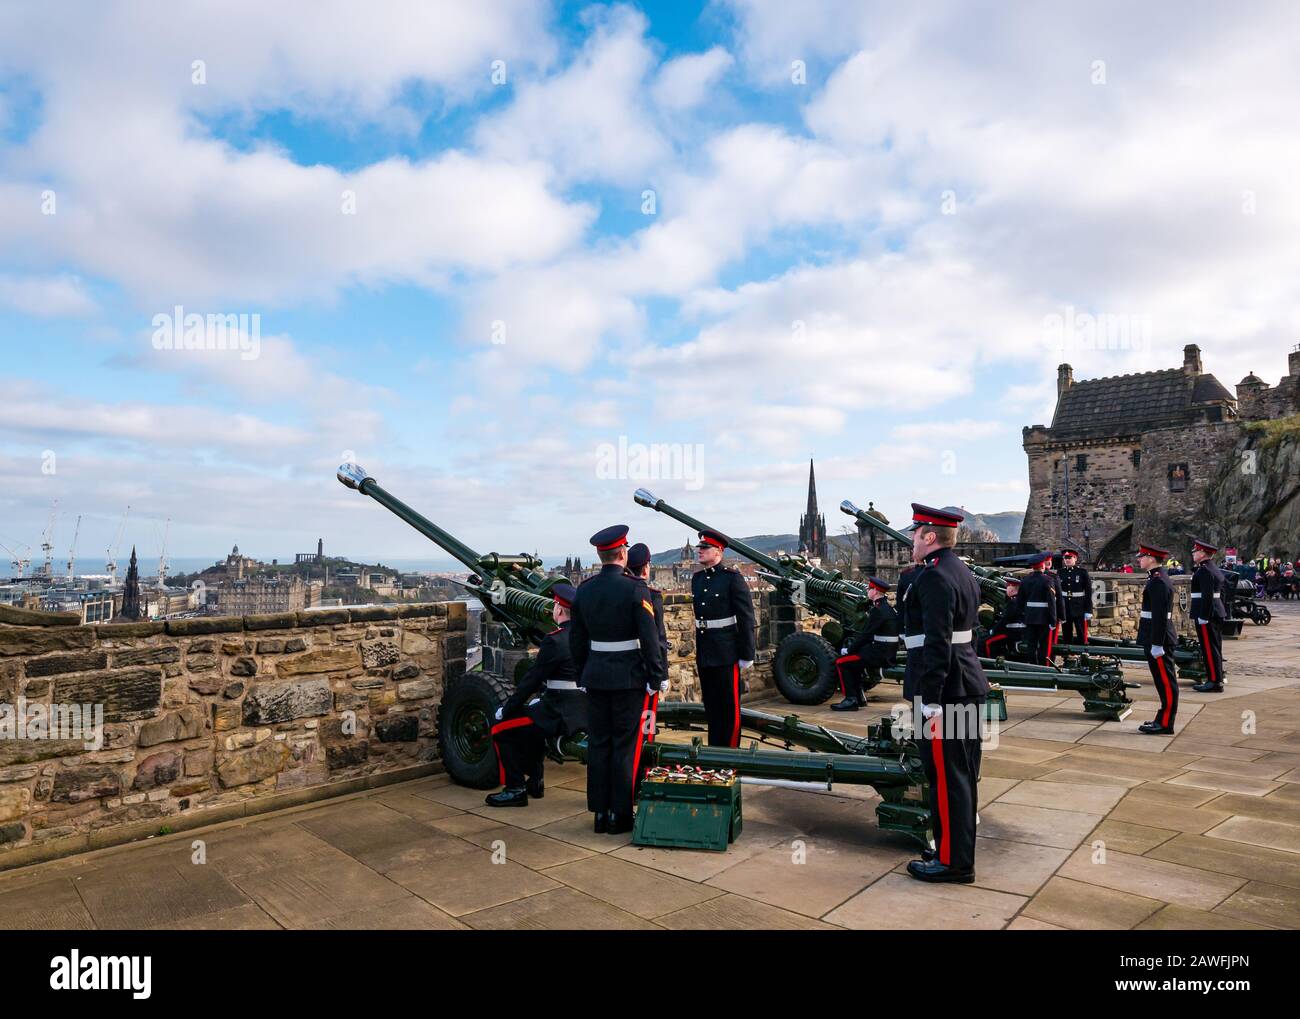 21 Pistolen salutieren die Thronbesteigung von Königin Elizabeth im Jahr 2020, Mills Mount, Edinburgh Castle, Schottland, Großbritannien Stockfoto